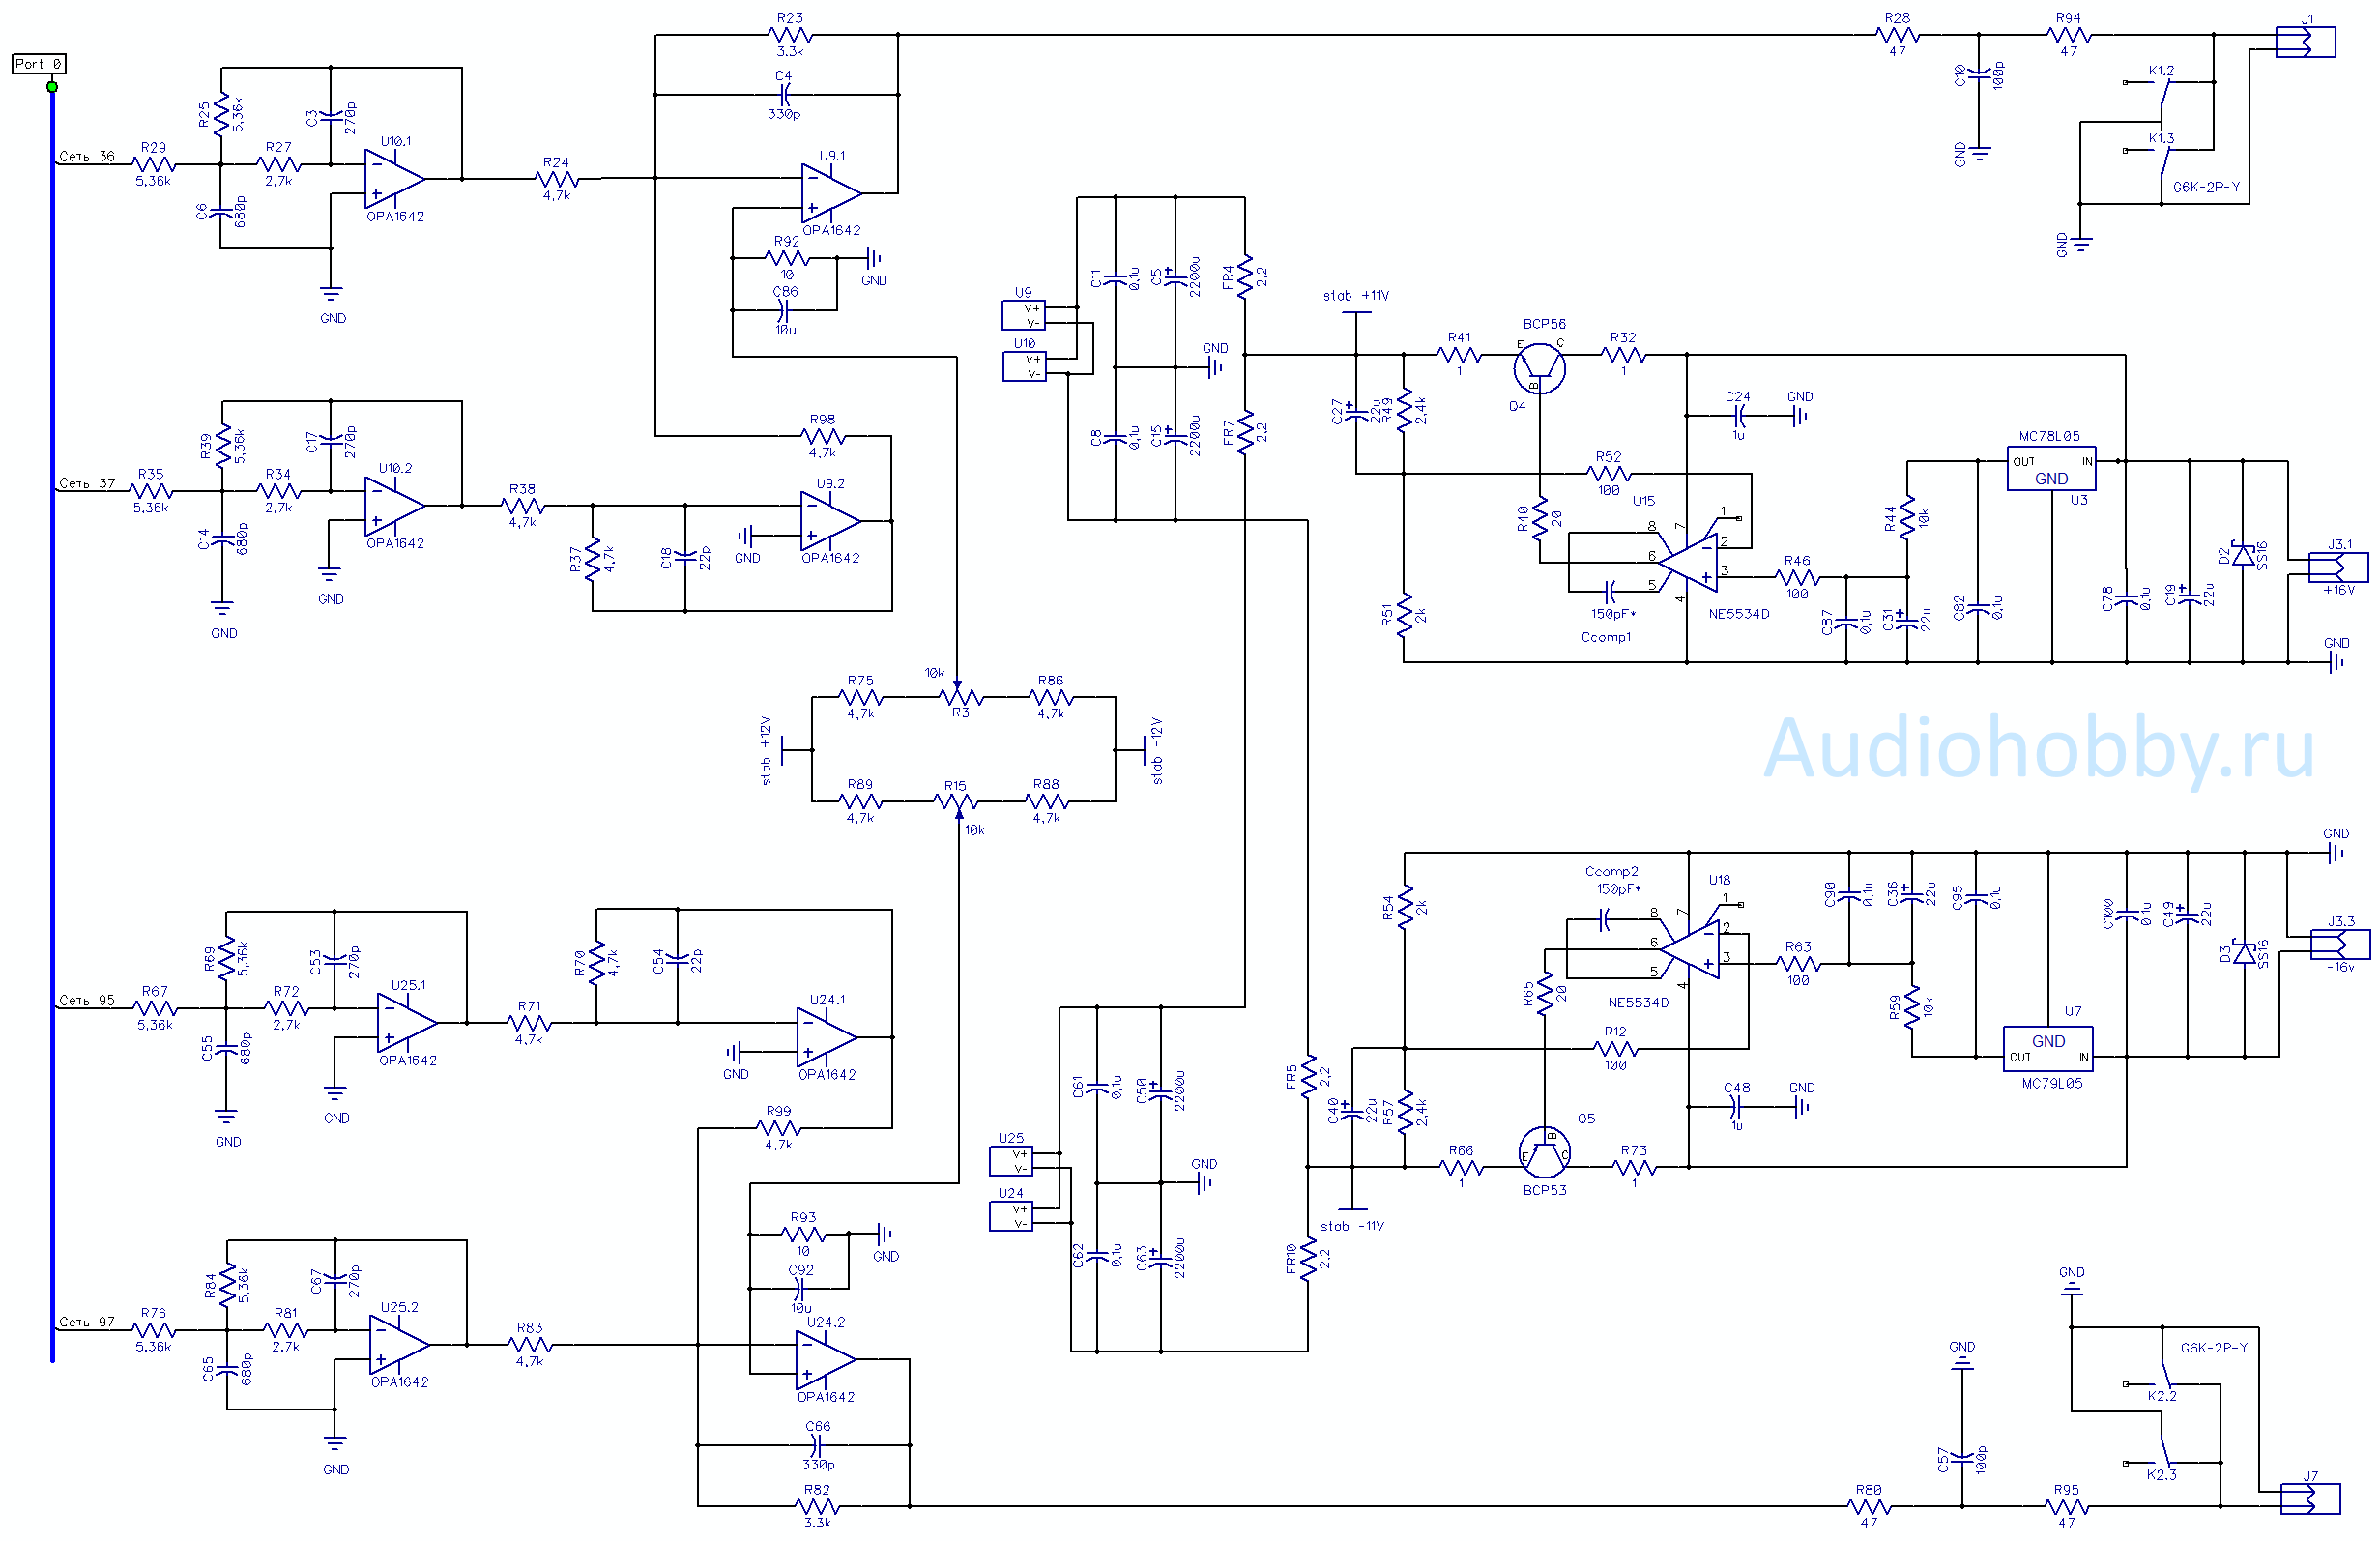 Схема аналогового фильтра ЦАП на ak4495